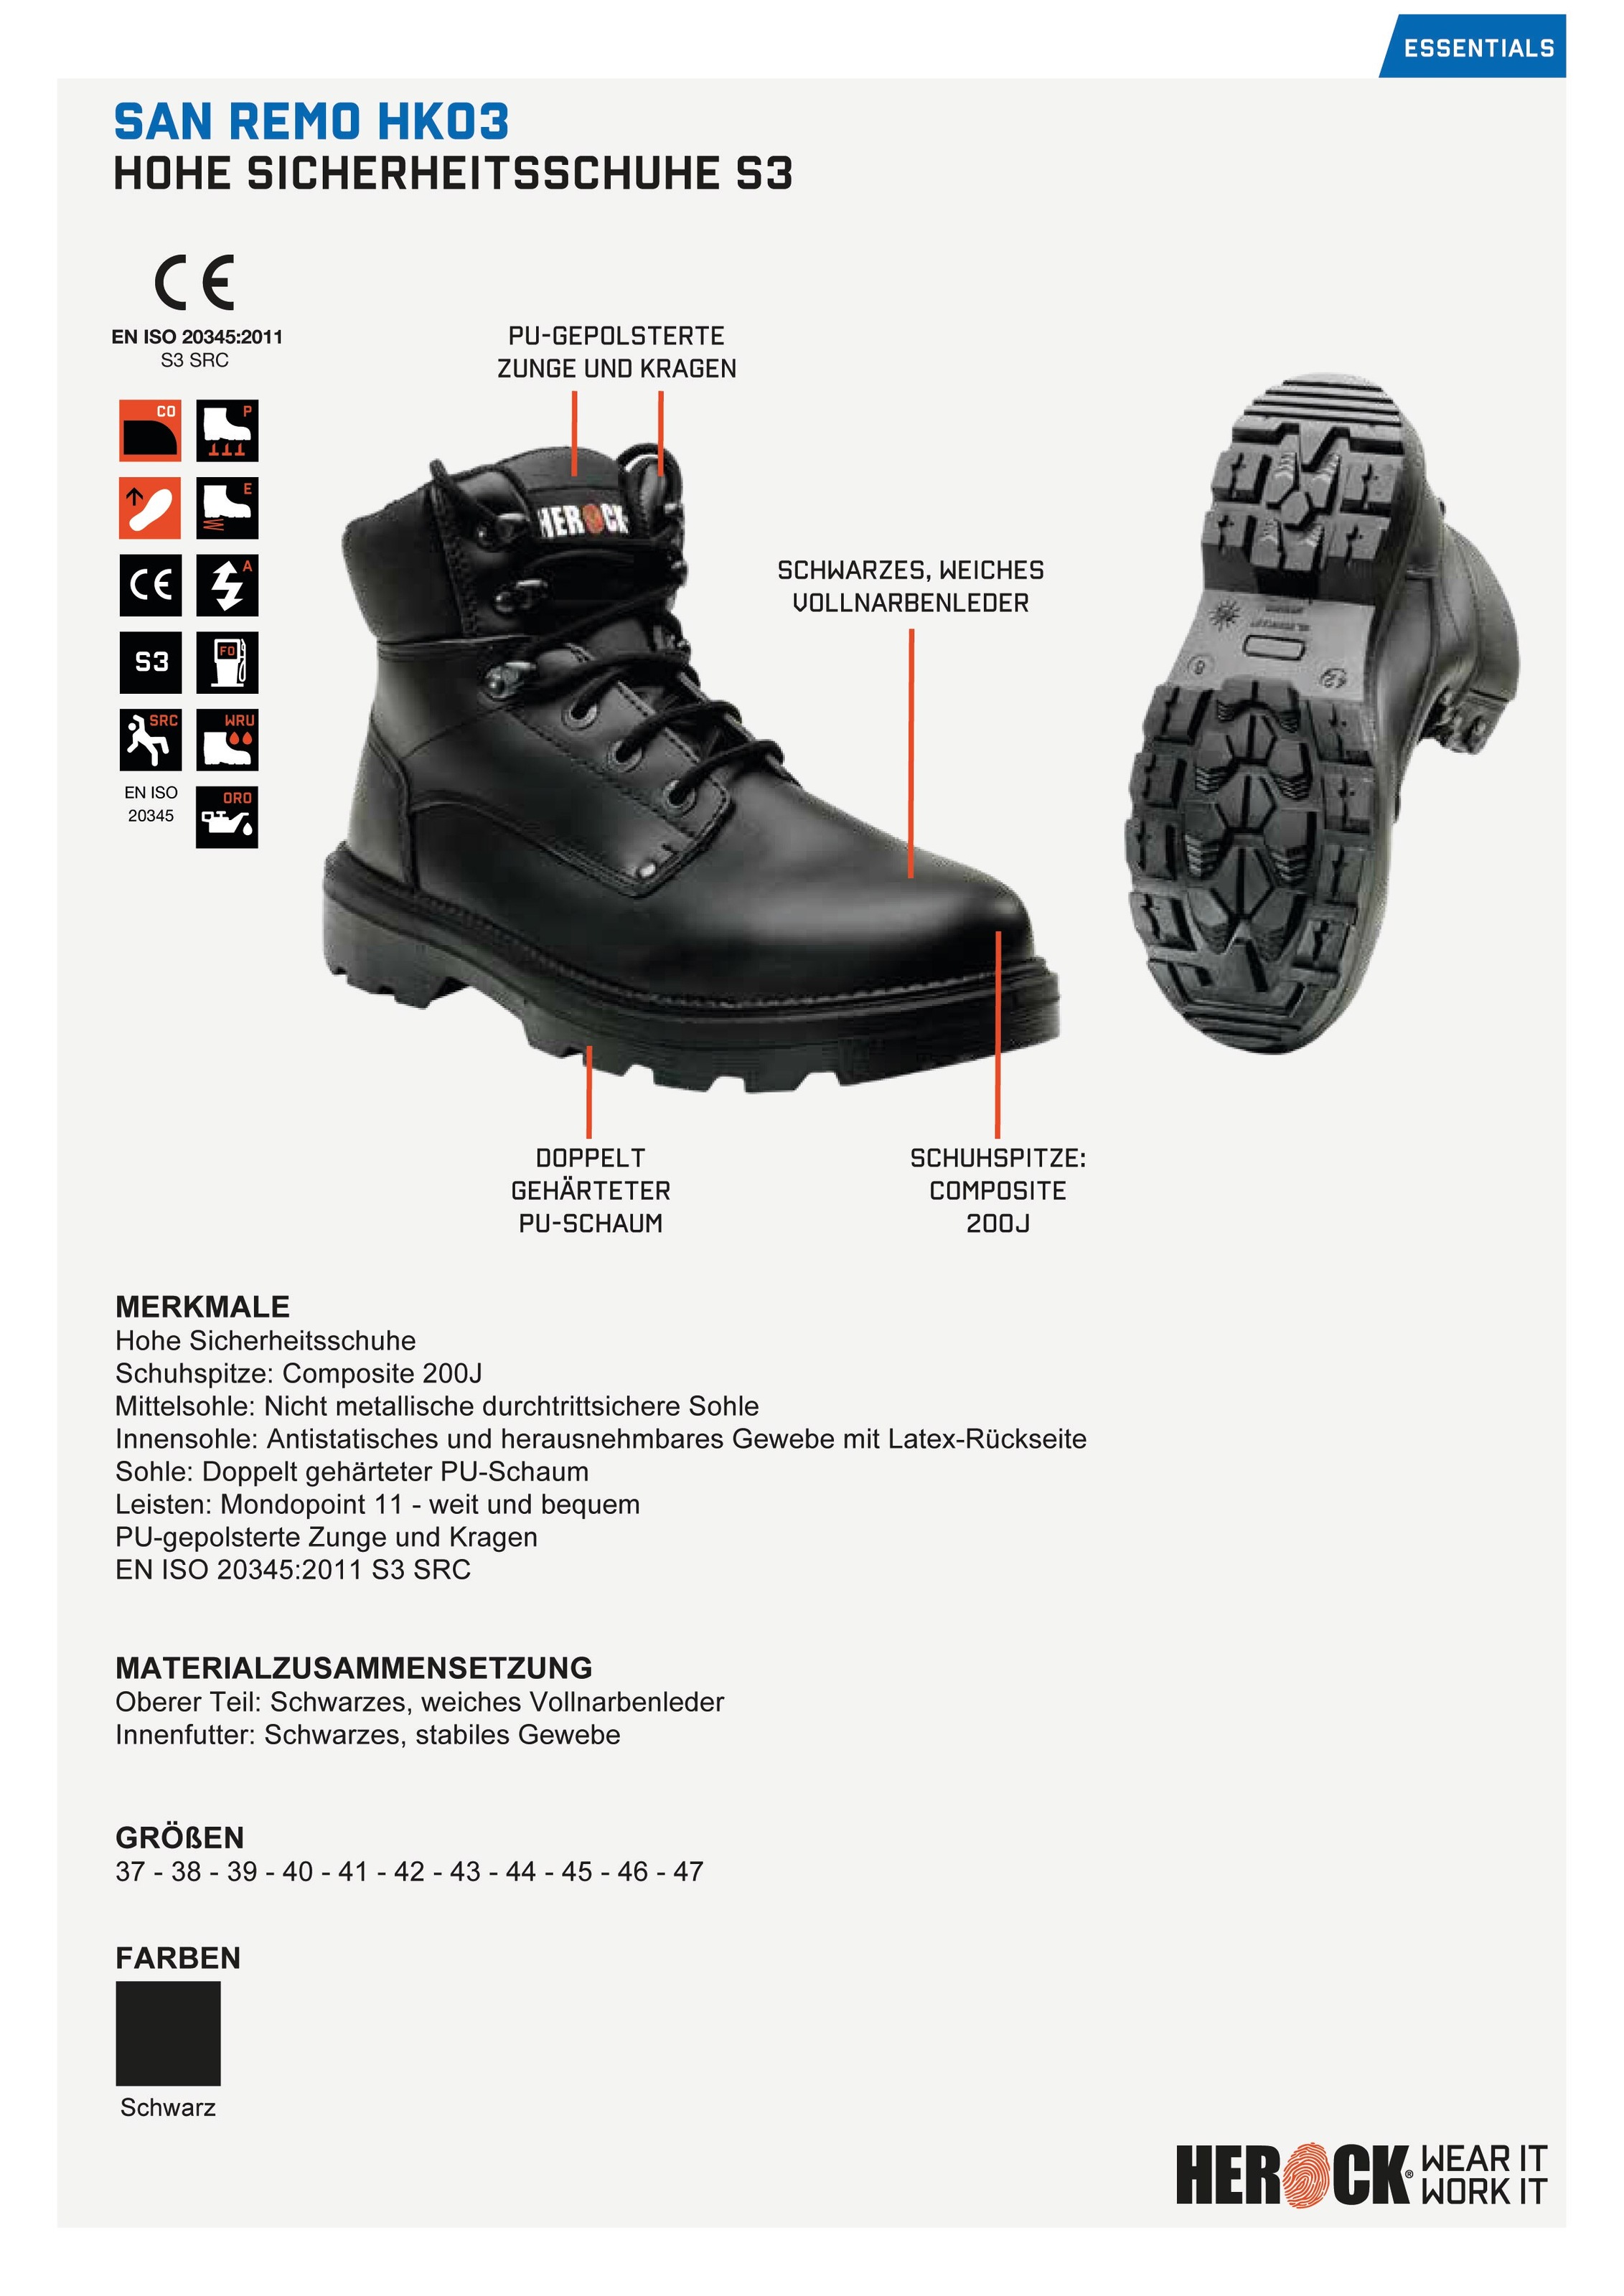 Herock Sicherheitsschuh | Schuhe«, Remo und BAUR »San weit S3 bestellen rutschhemmend, High durchtrittschutz, leicht Compo